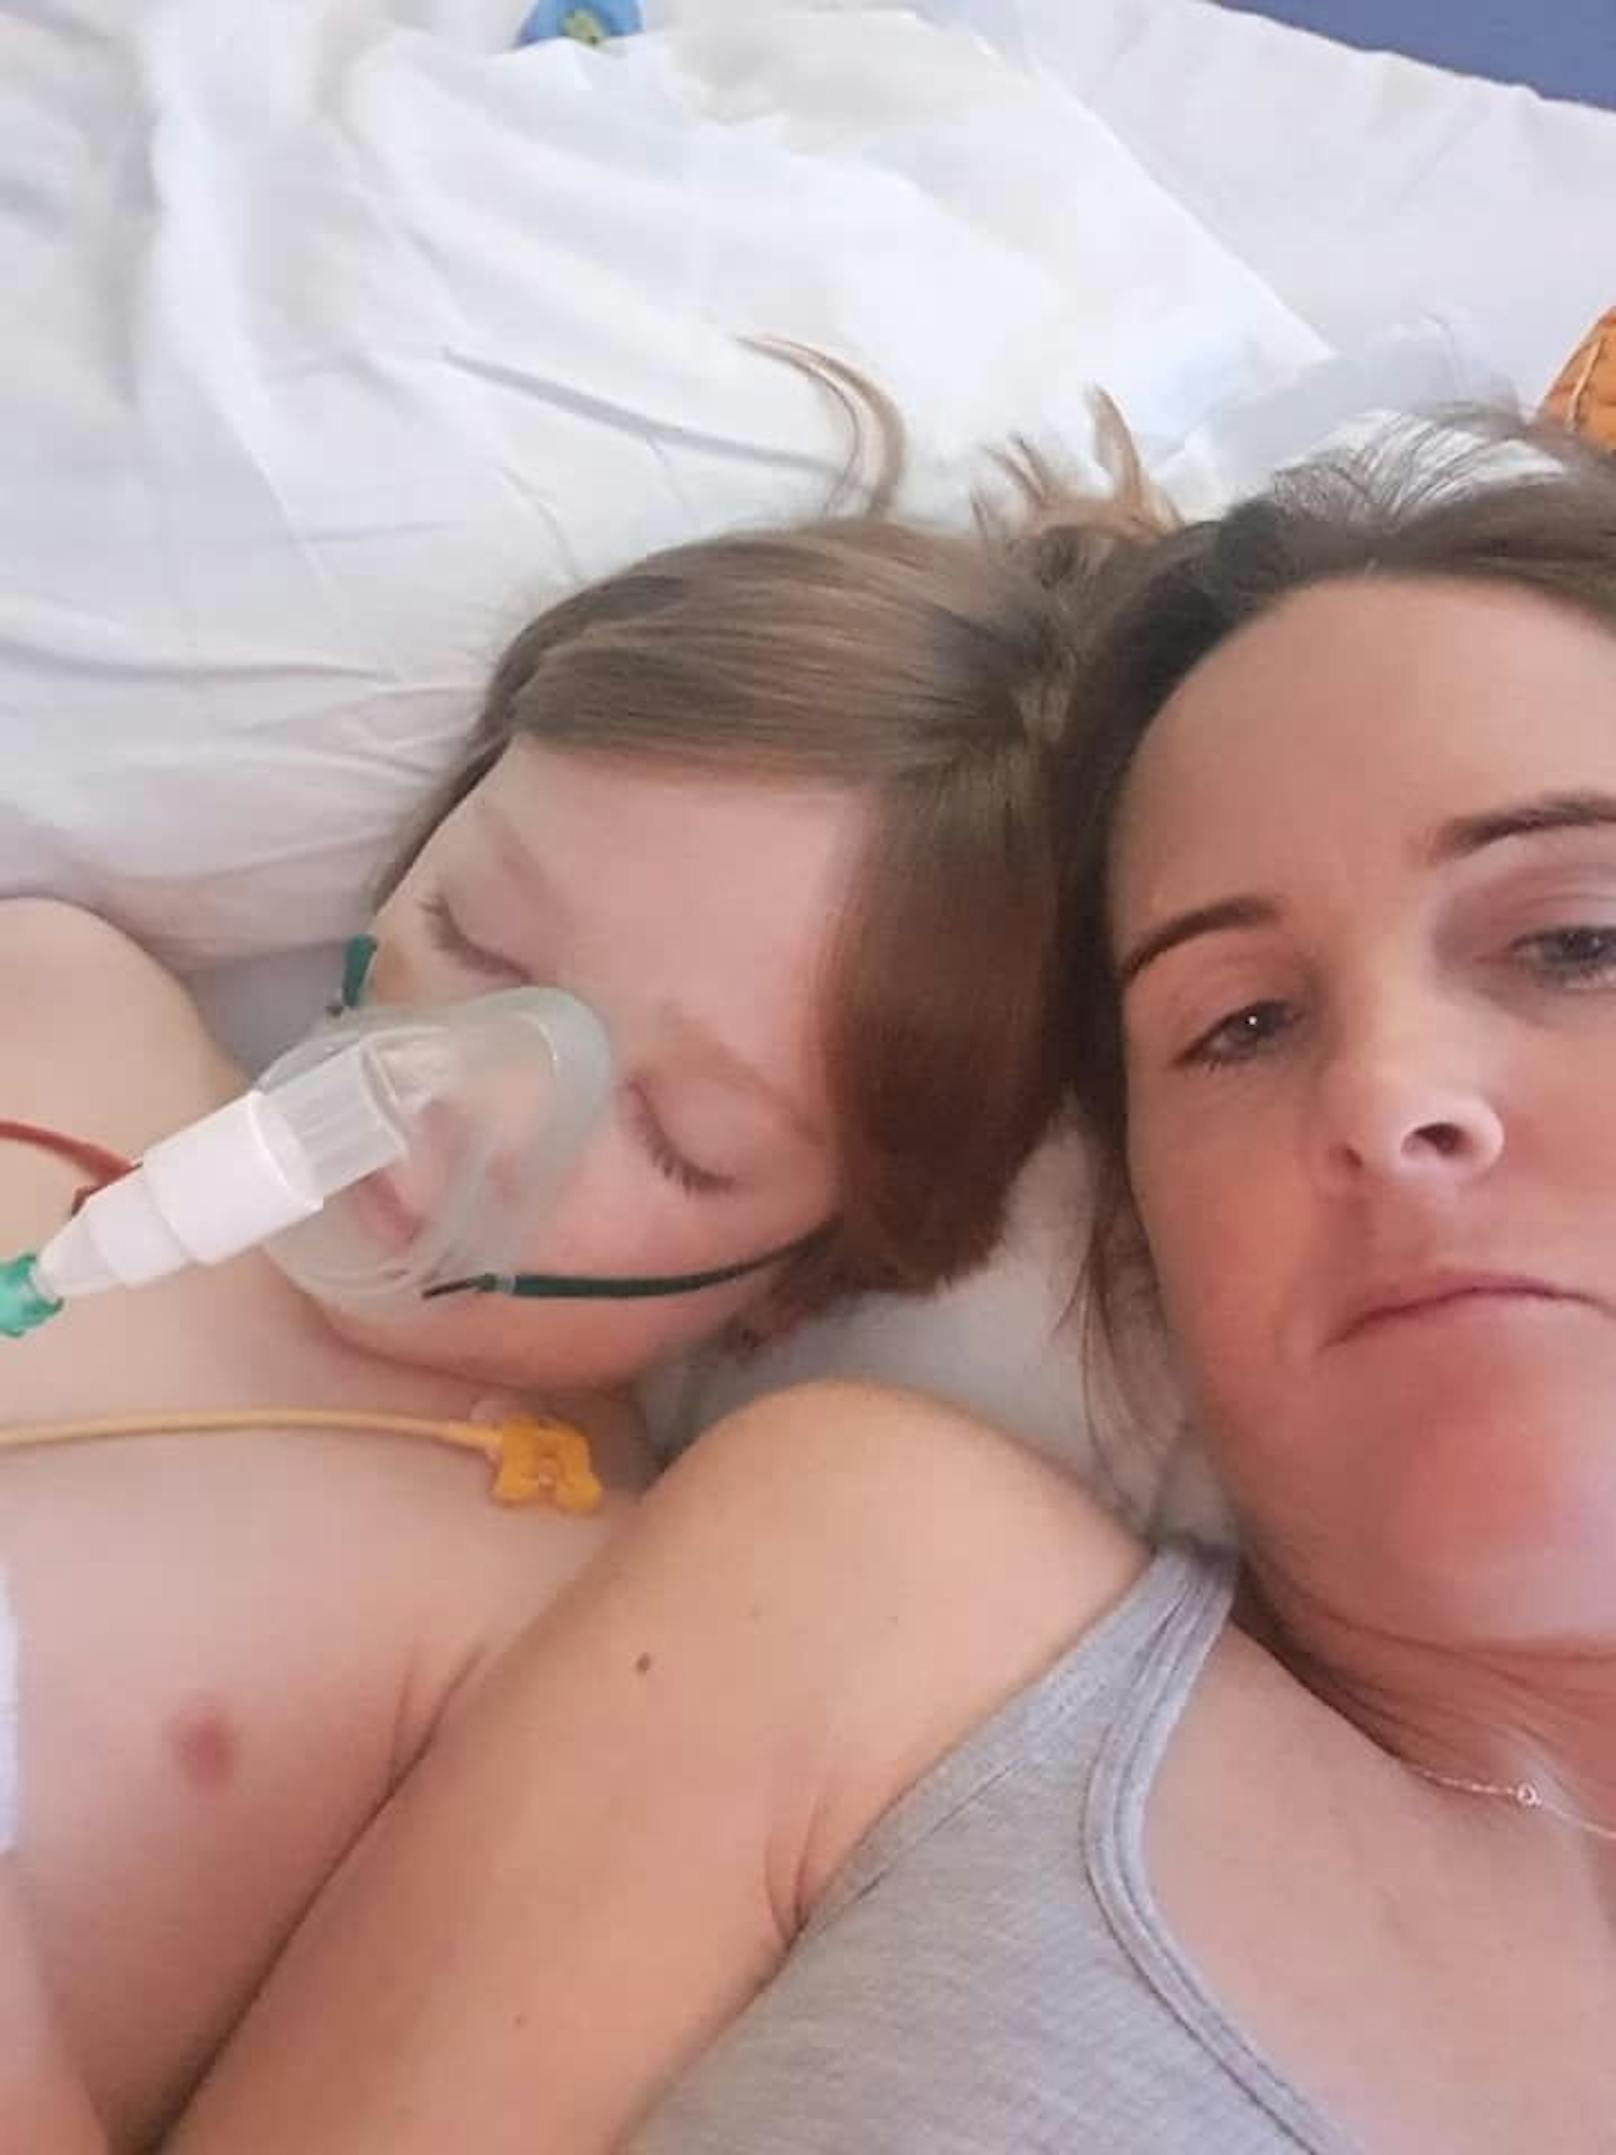 Der sechsjährige Logan Walsh aus Großbritannien hatte eine Corona-Infektion ohne Symptome überstanden. Sechs Wochen später landete er auf der Intensivstation. Seine Mutter, Jessica Walsh, möchte jetzt andere Mütter warnen.